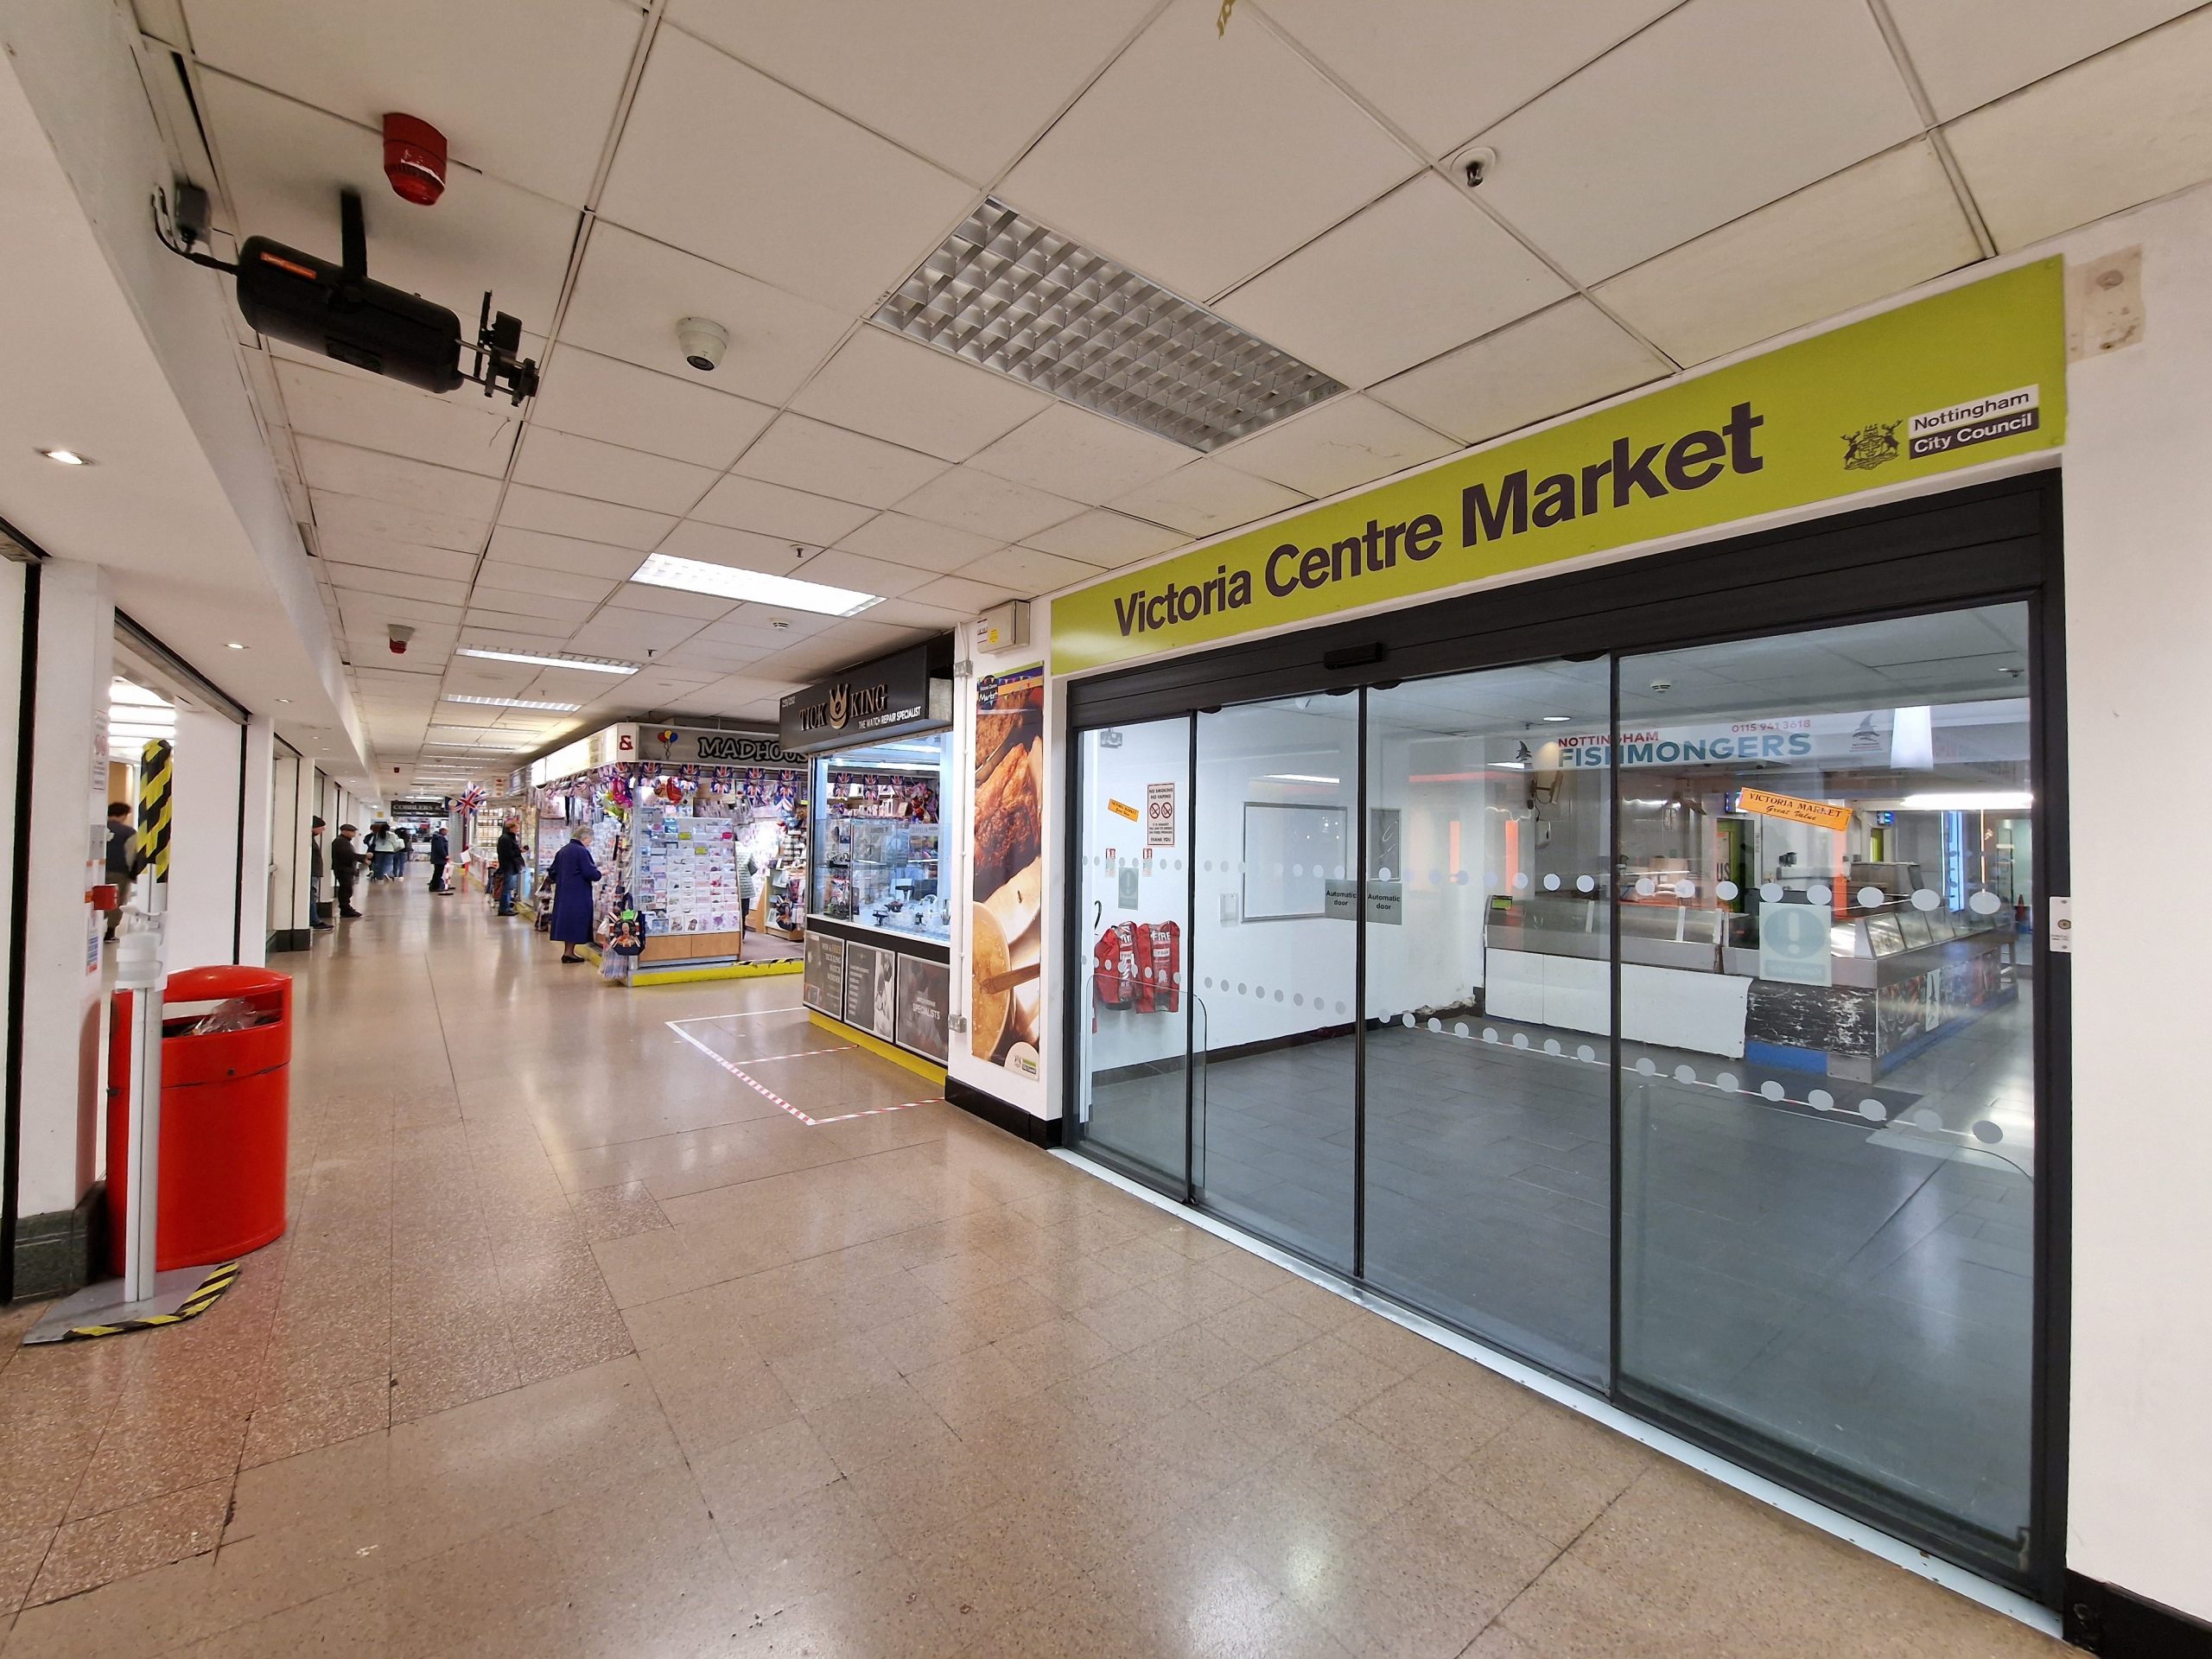 Victoria Centre Market scaled